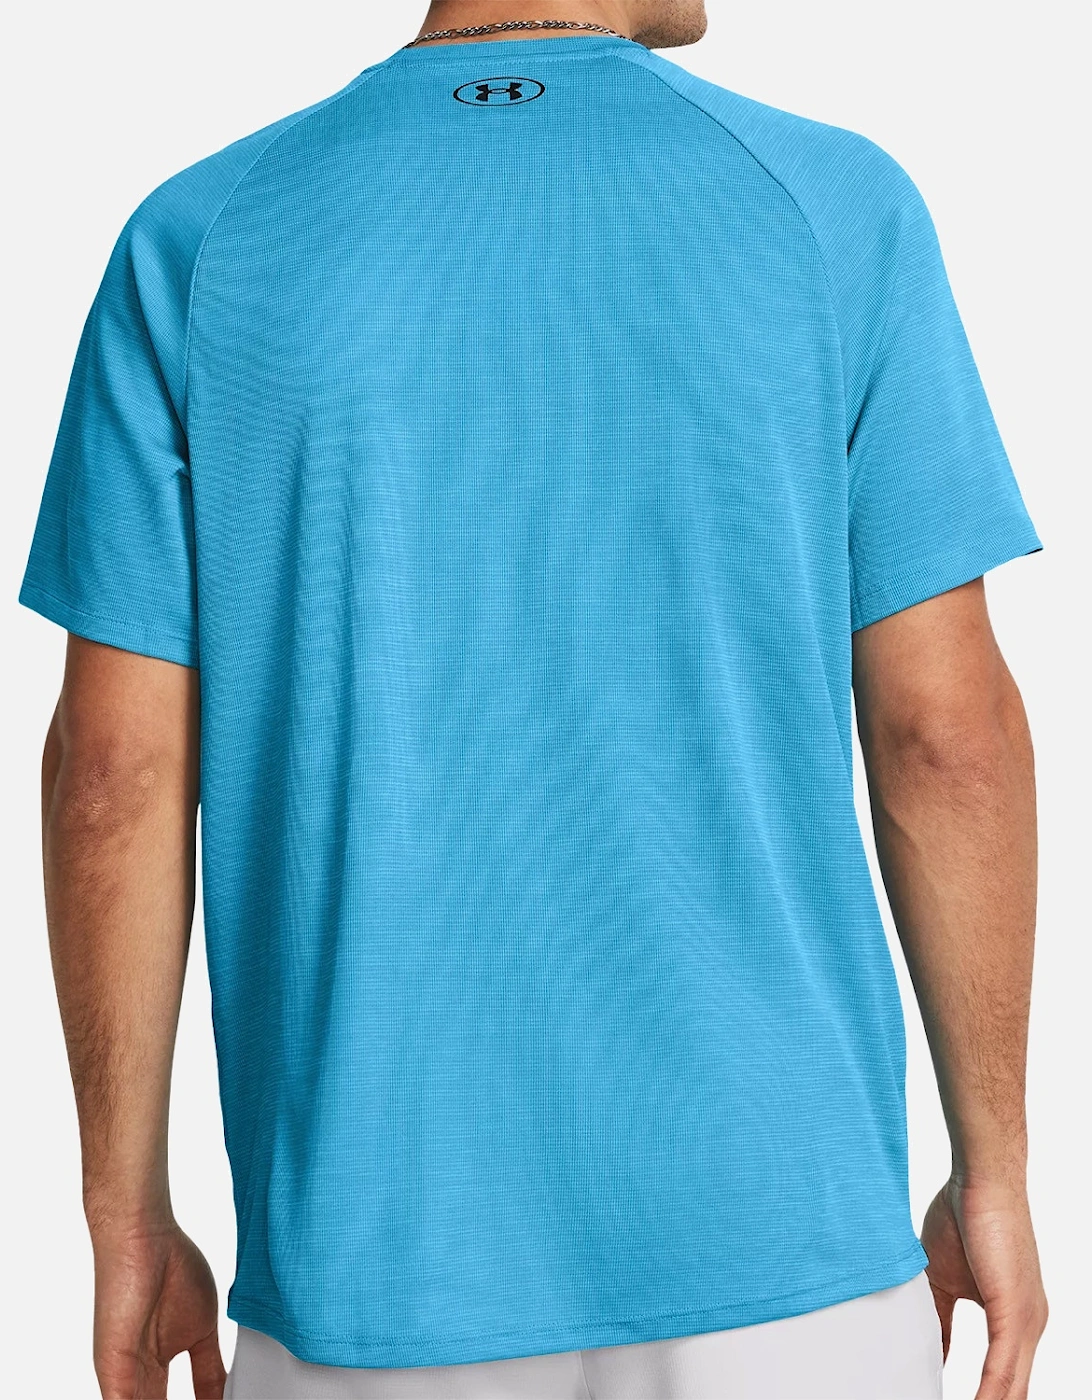 Mens Tech Textured T-Shirt (Blue)